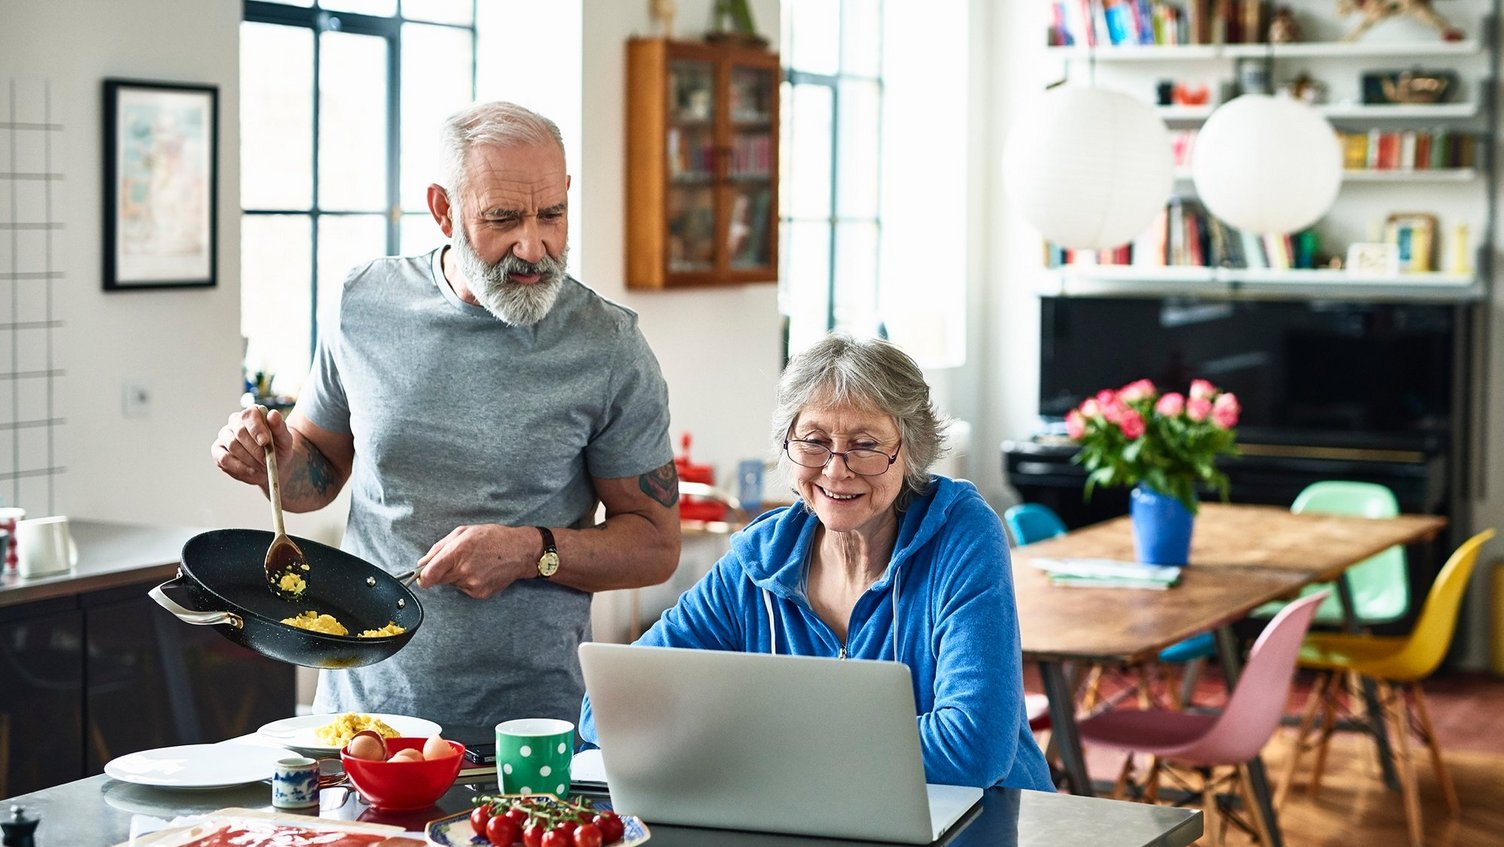 Ein älteres Ehepaar in der Küche. Die Frau sitzt lächelnd an ihrem Laptop. Der Mann bereitet das Essen zu und schaut ihr interessiert über die Schulter.